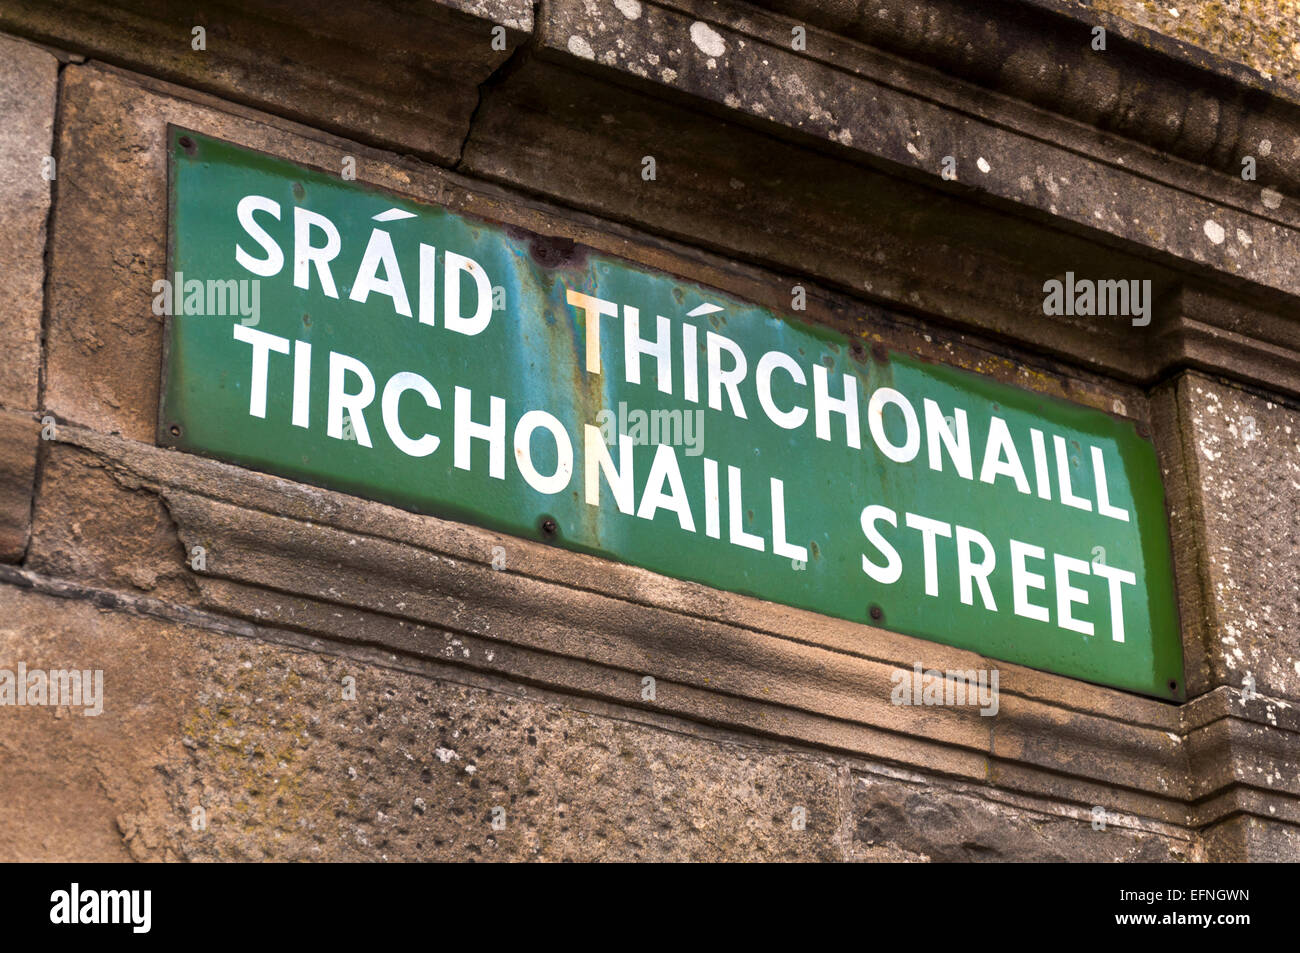 Tirchonaill Street sign en anglais et langue gaélique irlandais pour l'ancien nom de la ville de Donegal Irlande Donegal Banque D'Images